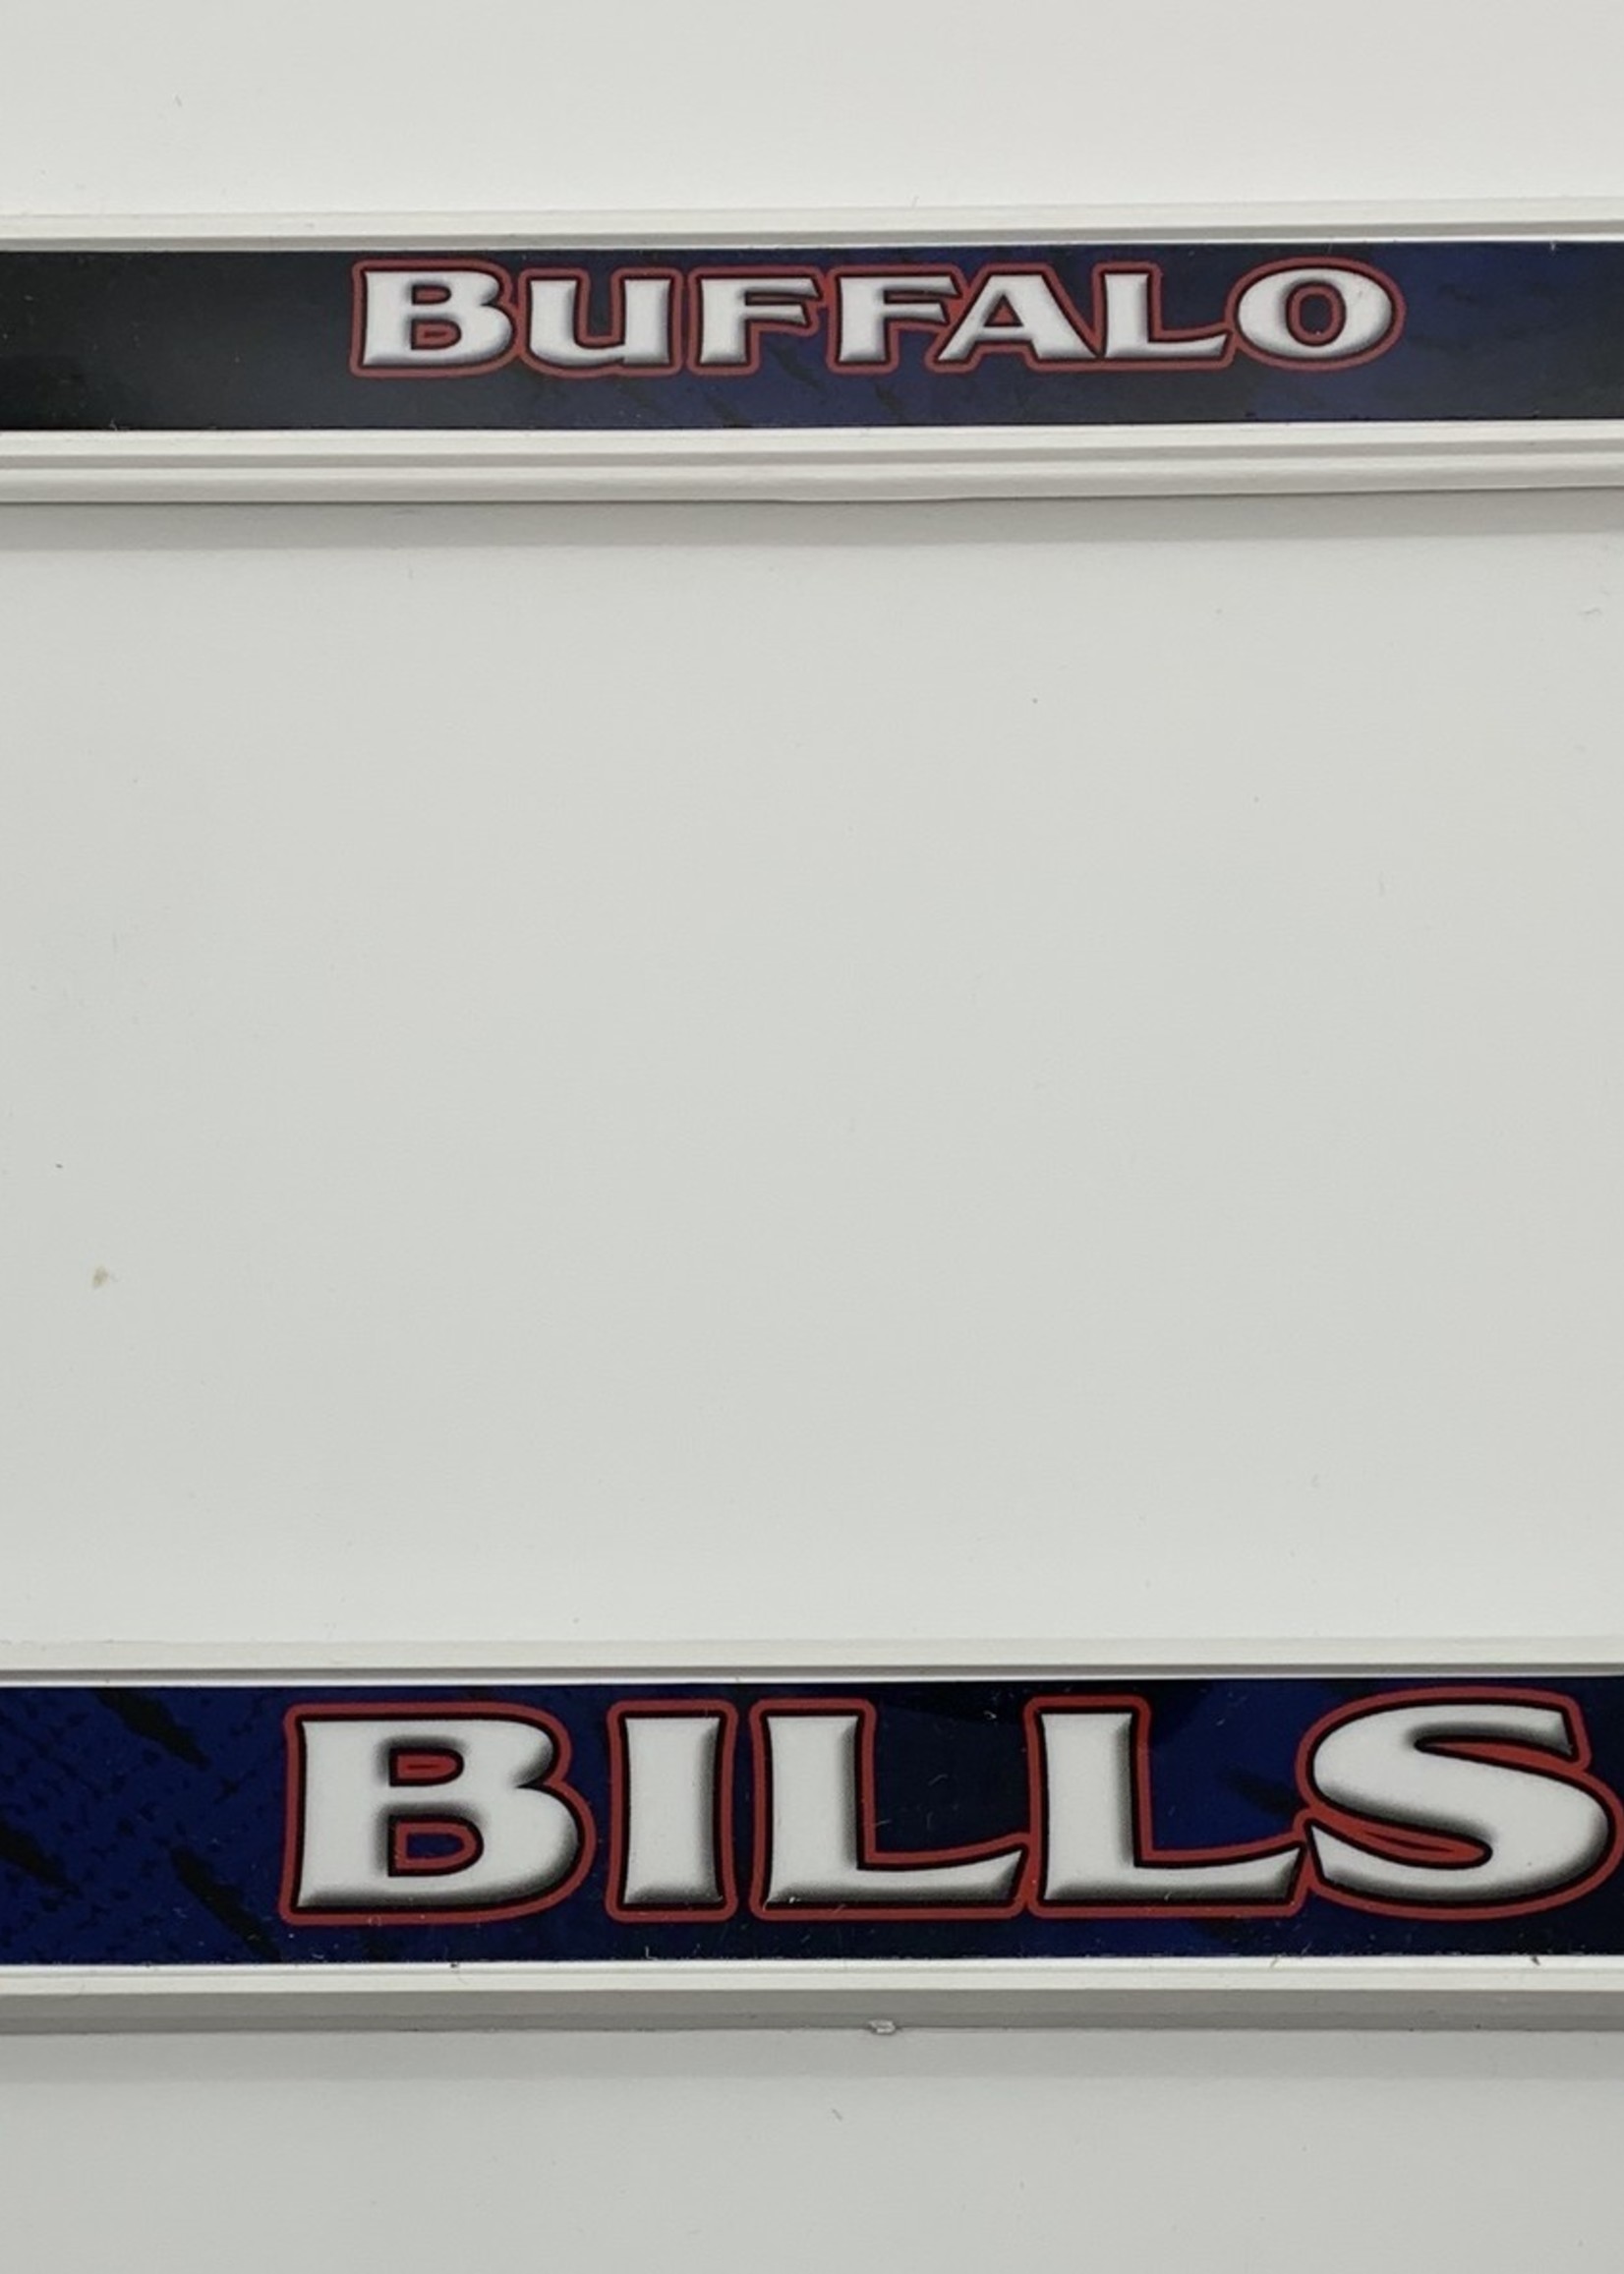 NFL Buffalo Bills Bling Chrome License Plate Frame